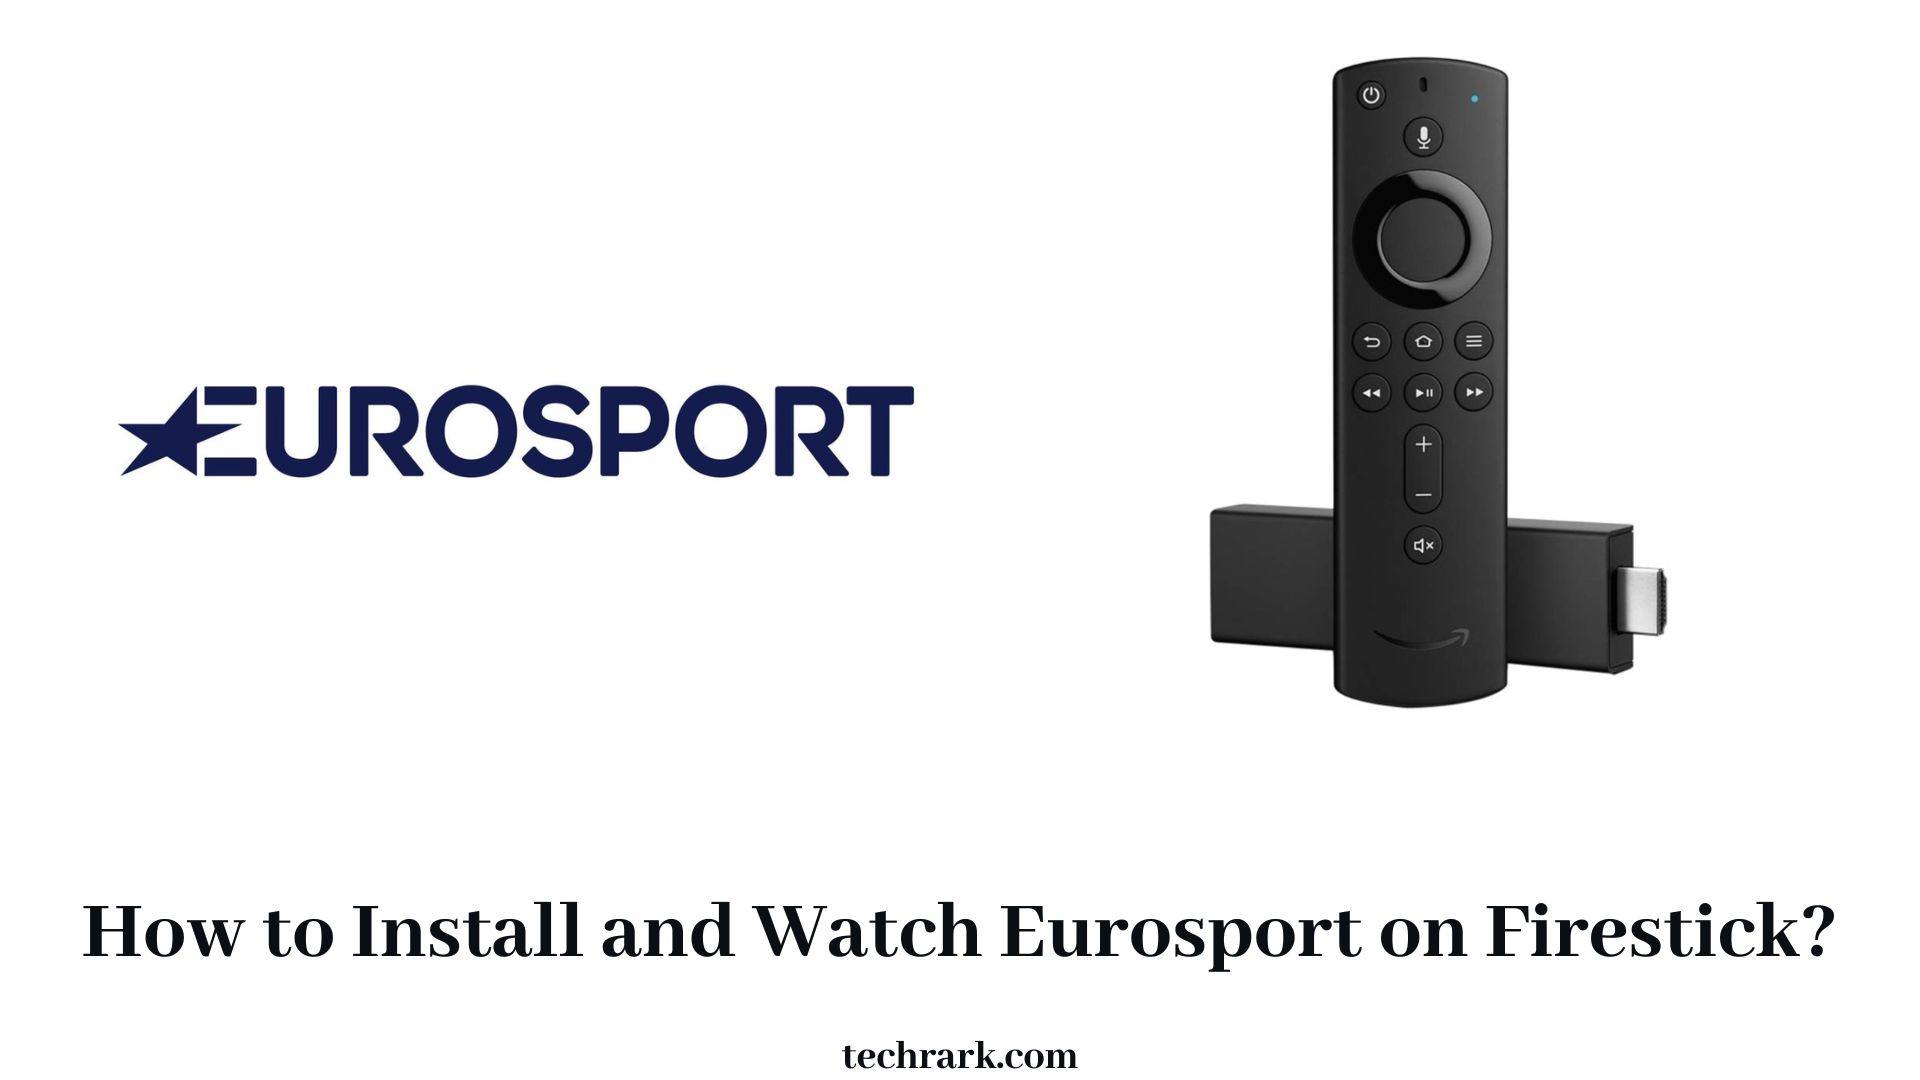 Eurosport on Firestick